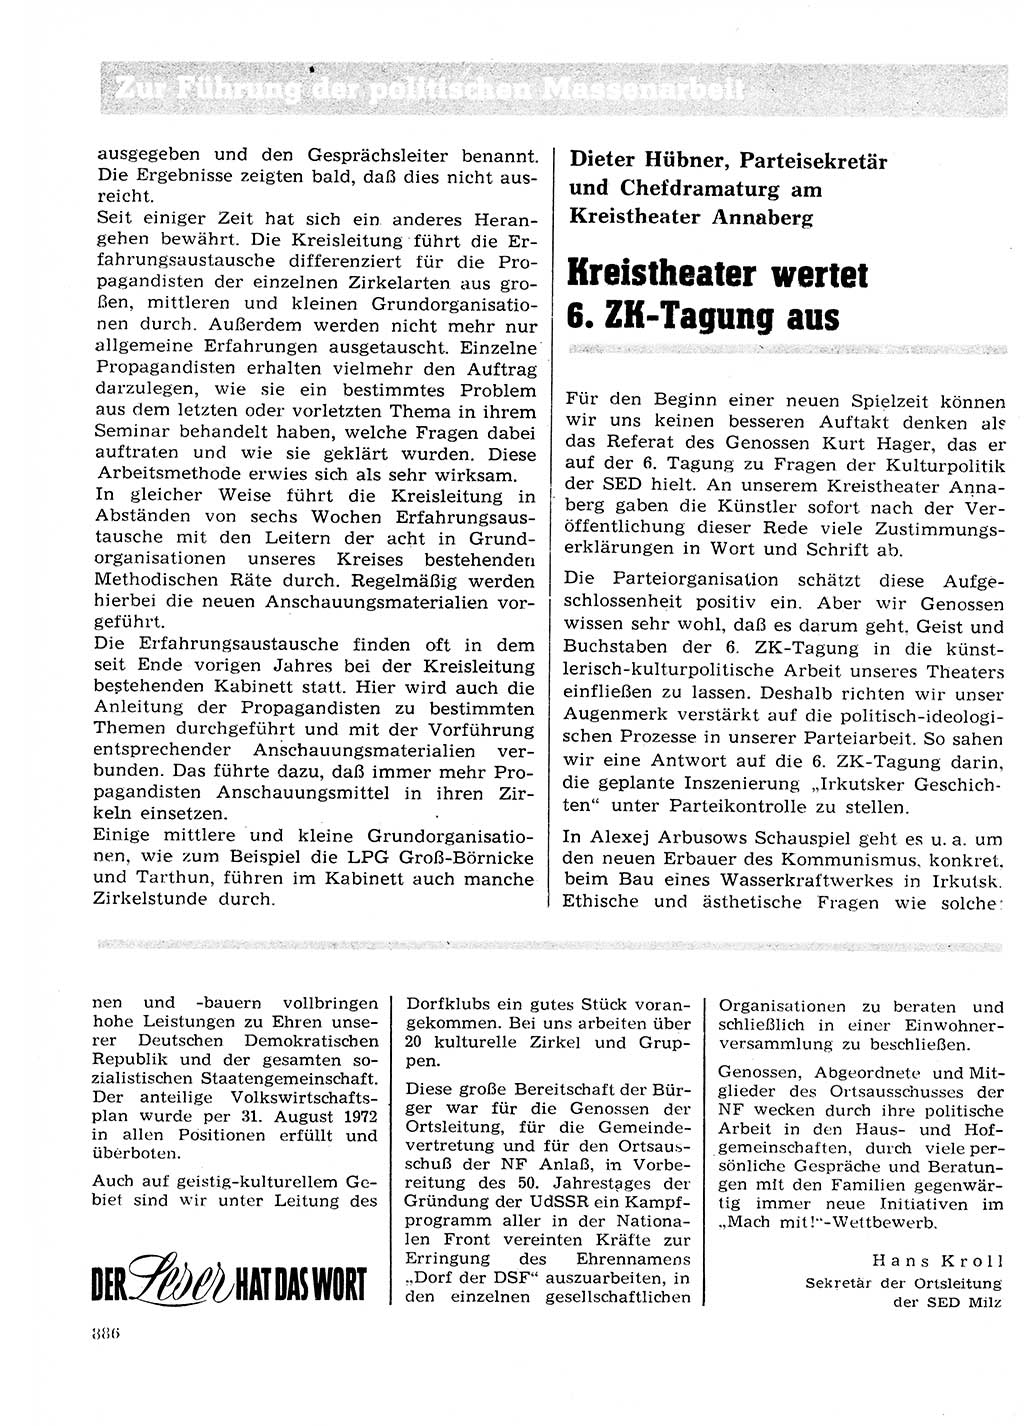 Neuer Weg (NW), Organ des Zentralkomitees (ZK) der SED (Sozialistische Einheitspartei Deutschlands) für Fragen des Parteilebens, 27. Jahrgang [Deutsche Demokratische Republik (DDR)] 1972, Seite 886 (NW ZK SED DDR 1972, S. 886)